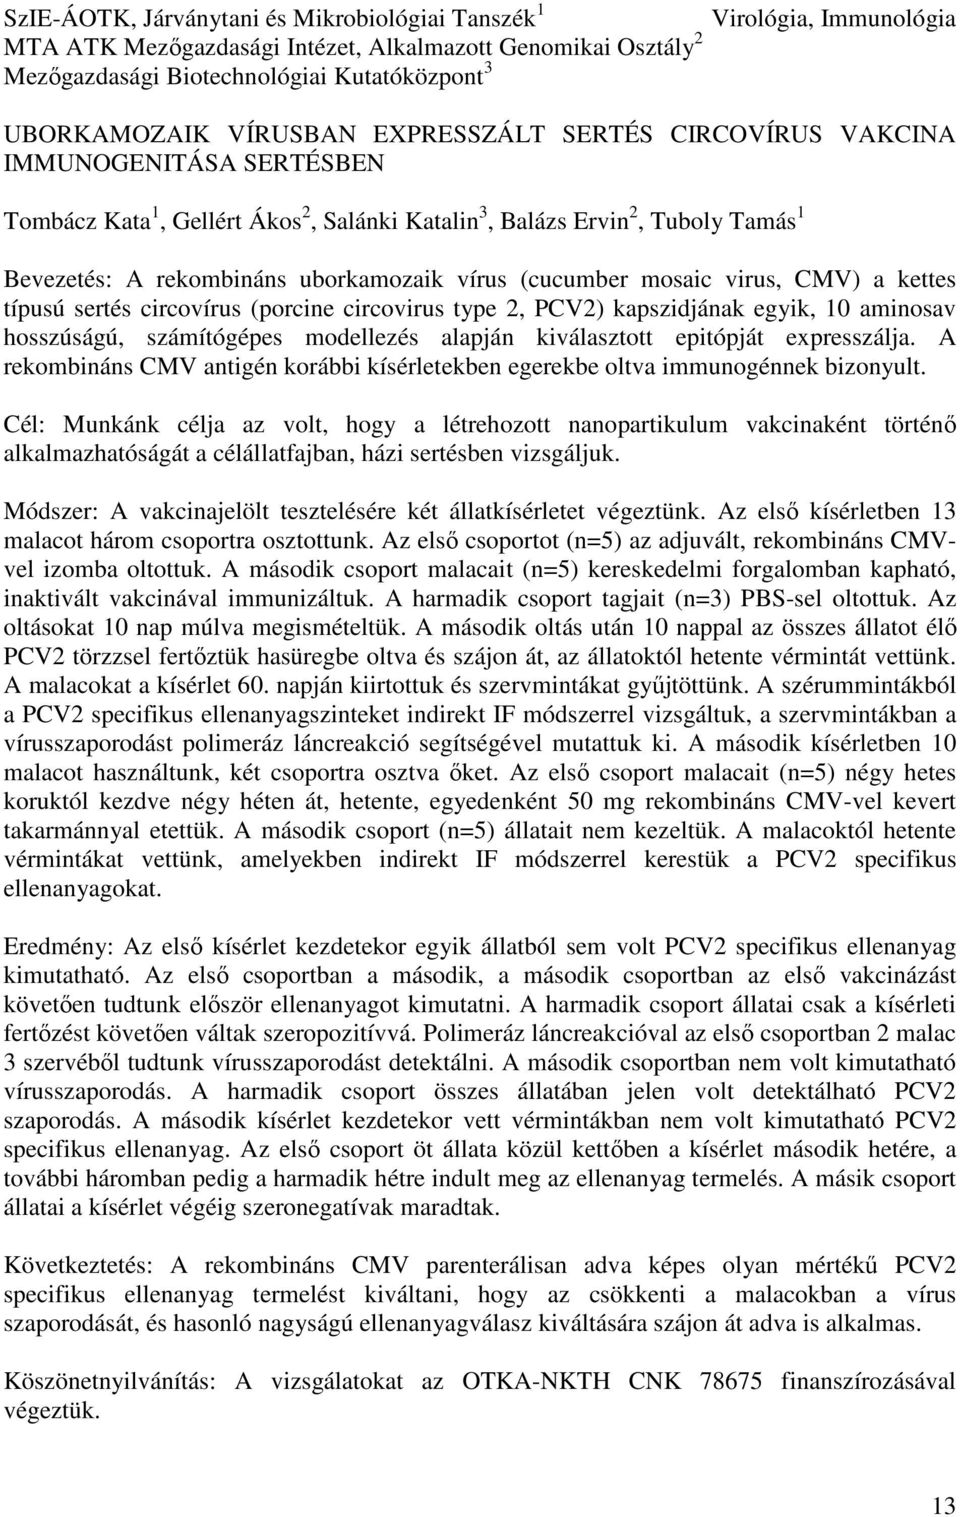 (cucumber mosaic virus, CMV) a kettes típusú sertés circovírus (porcine circovirus type 2, PCV2) kapszidjának egyik, 10 aminosav hosszúságú, számítógépes modellezés alapján kiválasztott epitópját